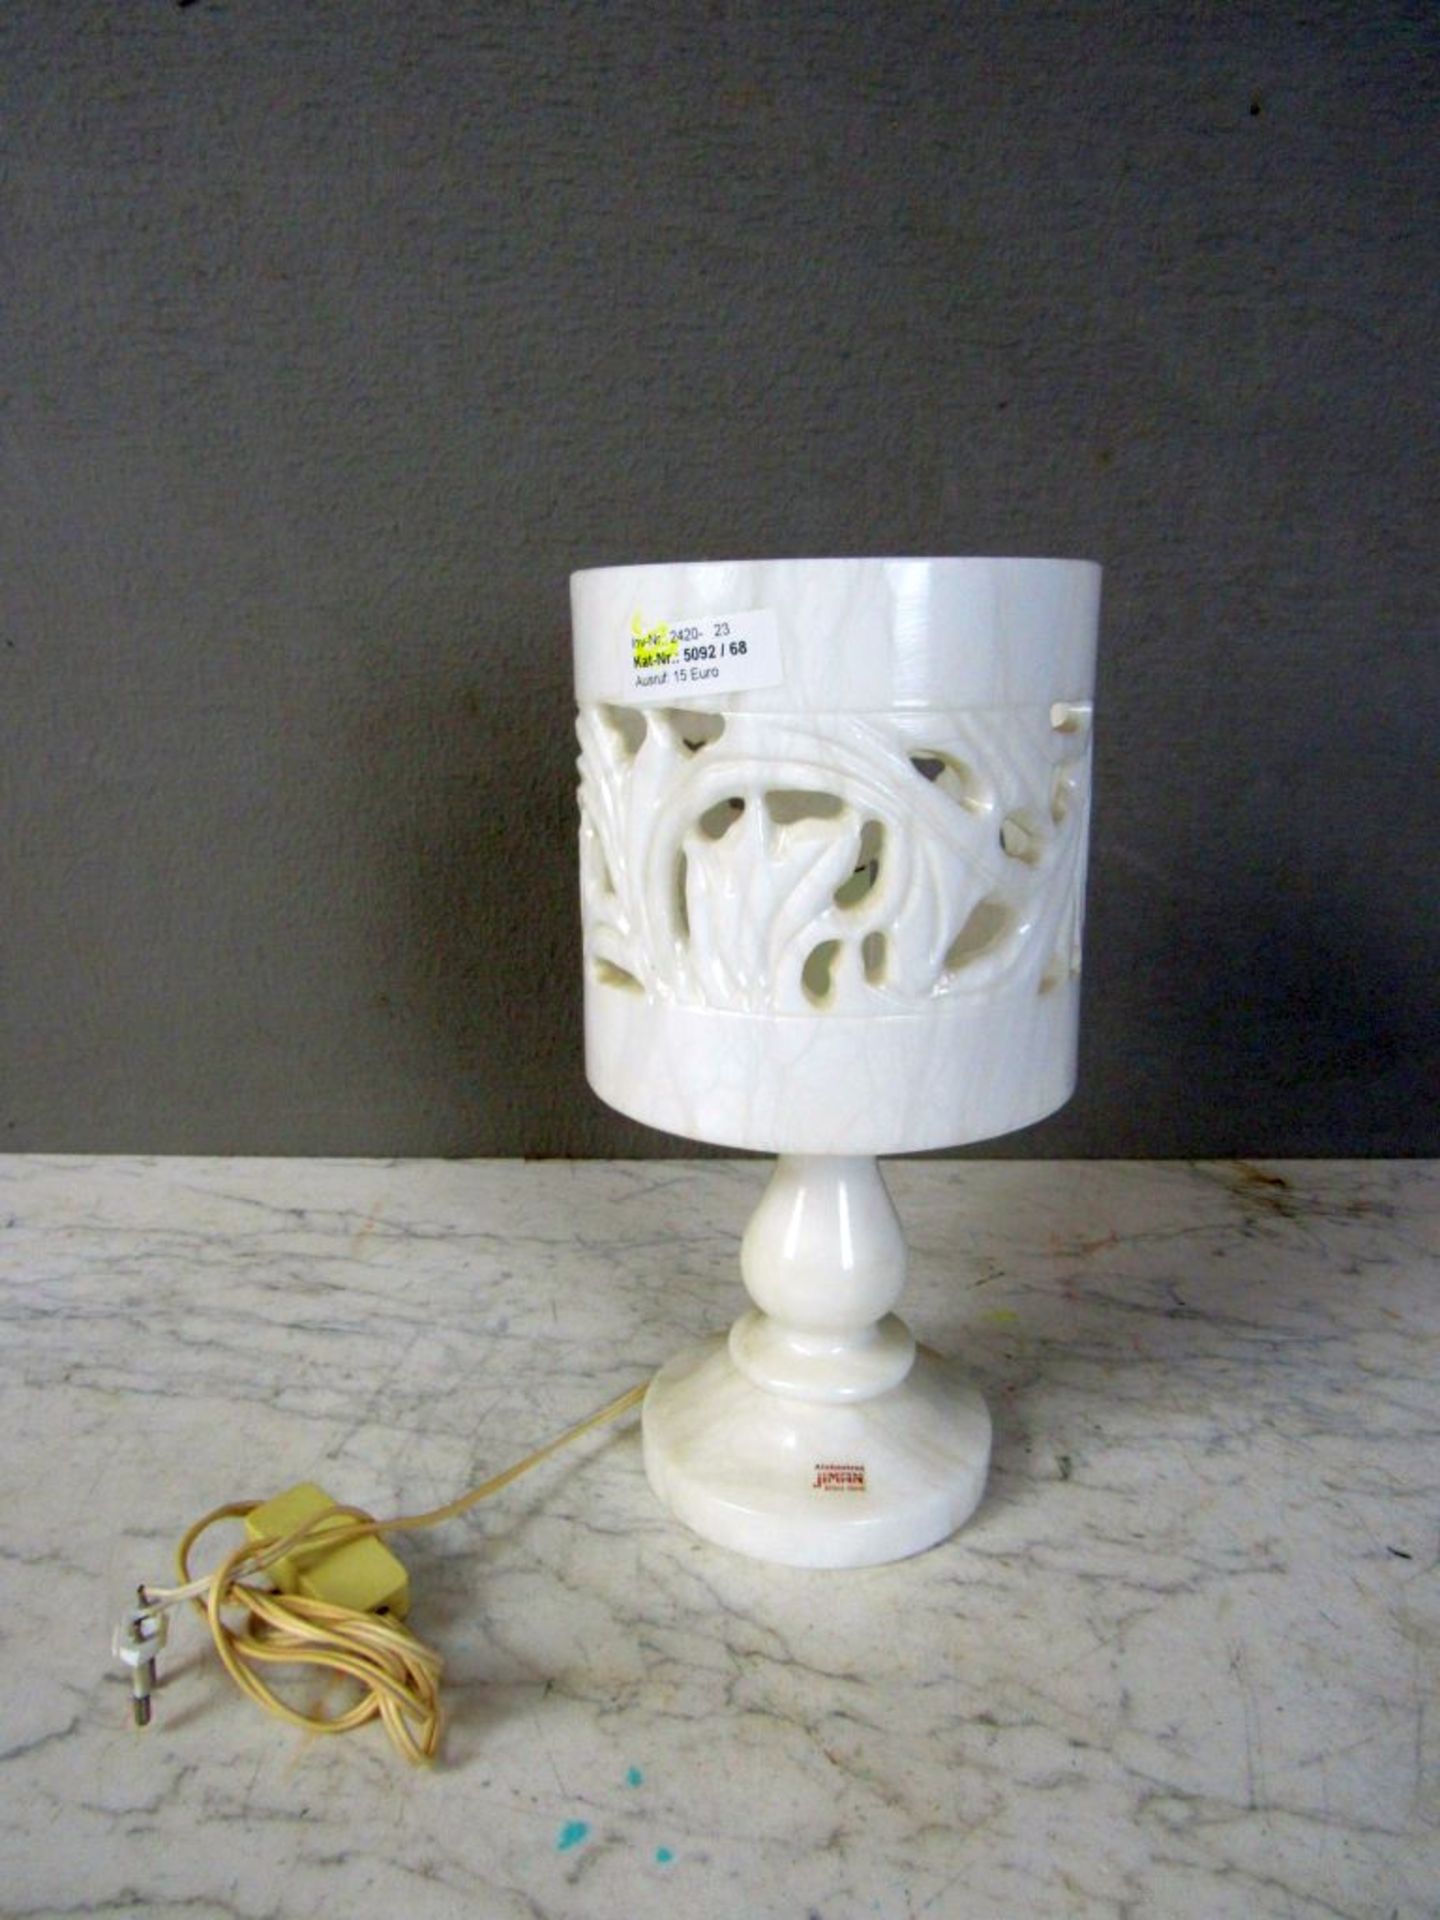 Tischlampe Alabaster 30 cm hoch